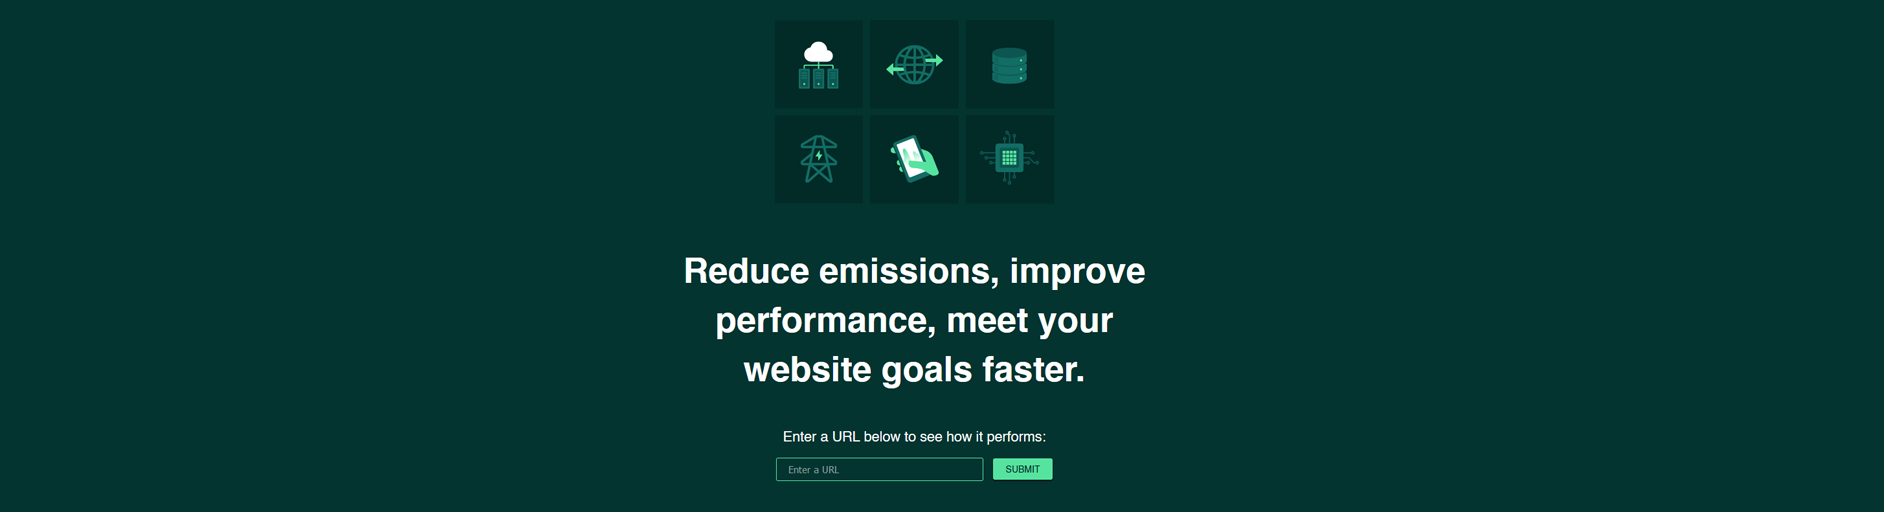 nachhaltige Homepage - Analyse der CNW.de Website